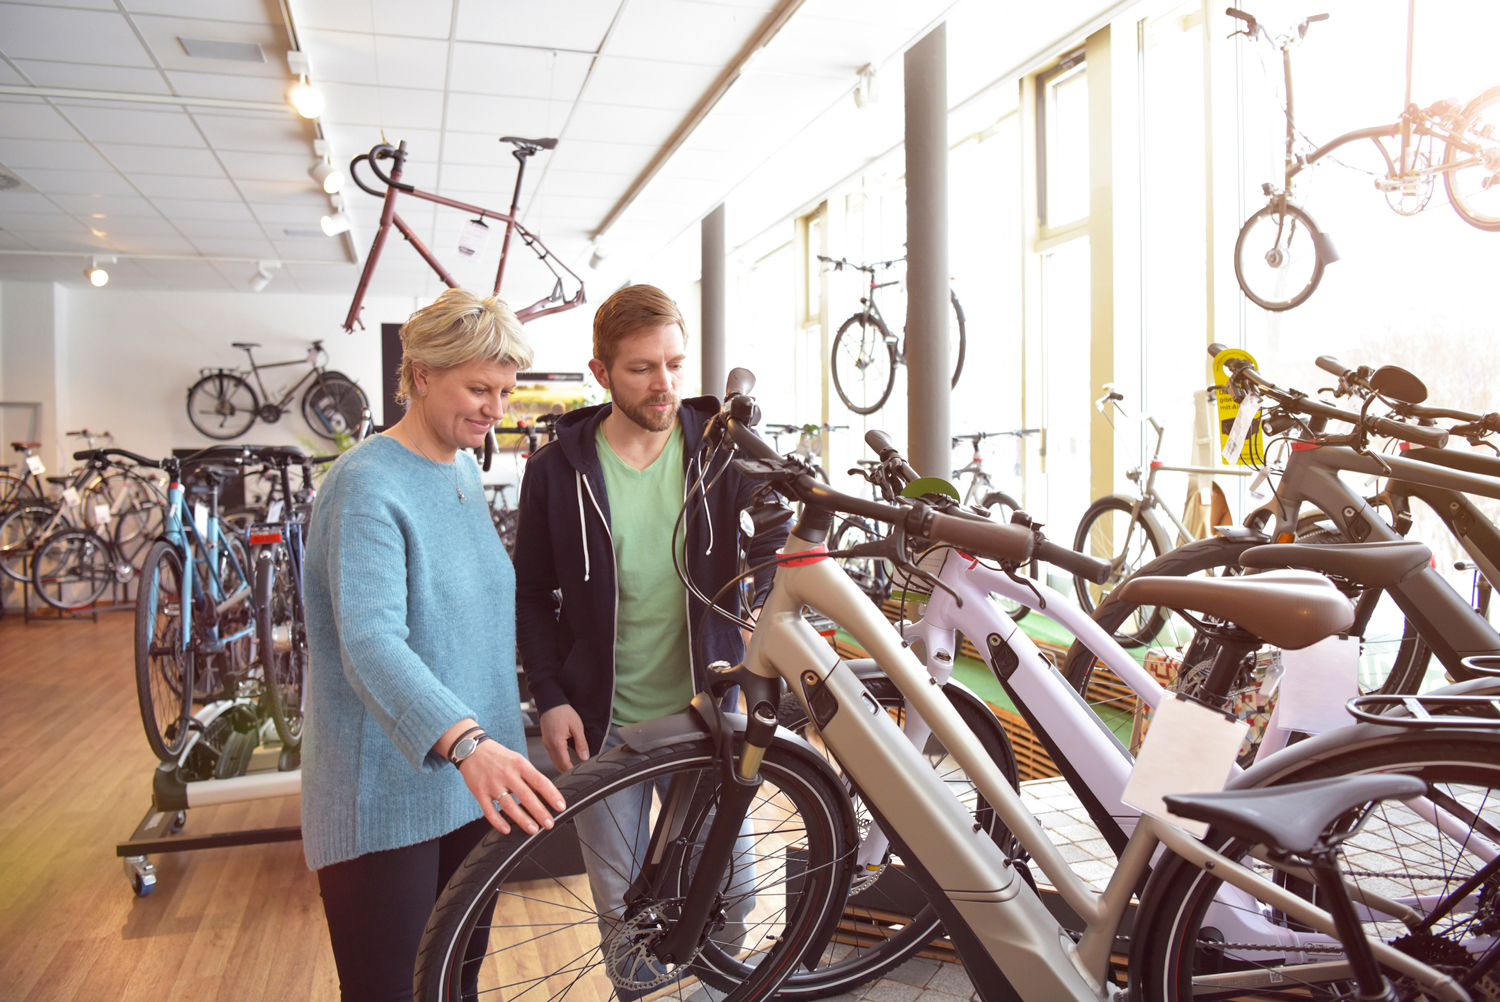 heet domein Broer Een nieuwe fiets of e-bike kopen: hier moet je op letten | Fietsen123